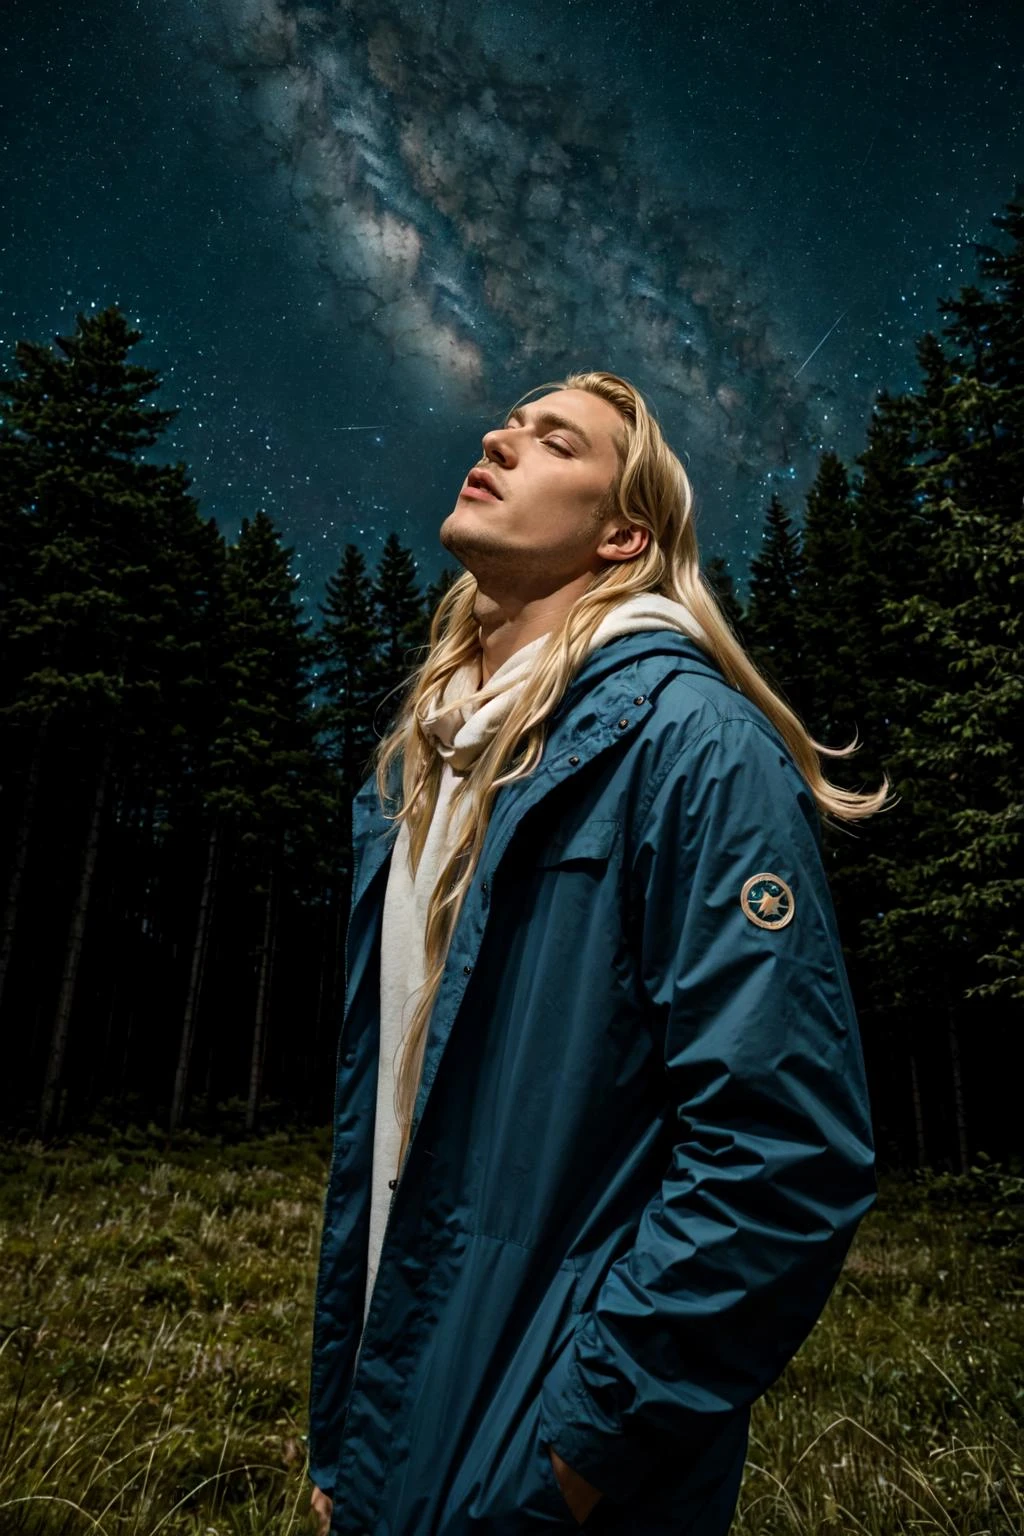 1男孩, 傑作, 一個長著金色長髮的帥哥仰望著繁星點點的夜空, 森林裡舒適的露營地, 星雲, 電影般的, 8K,